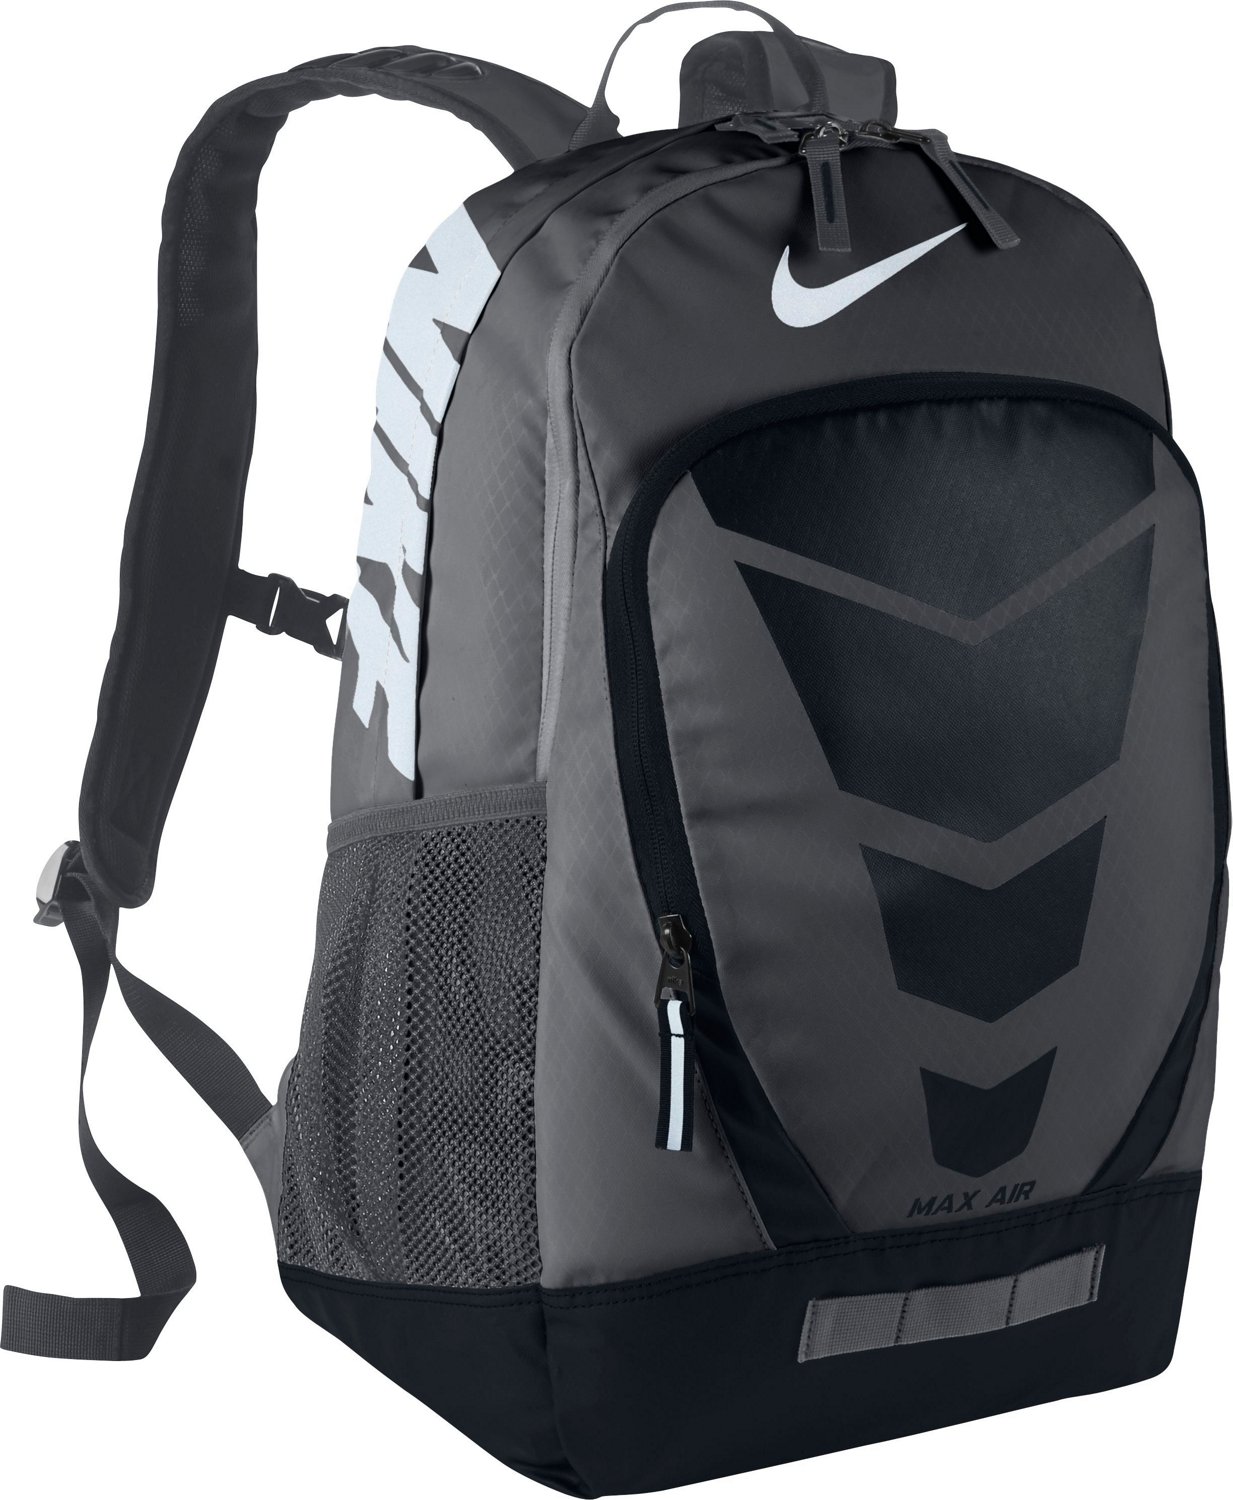 Backpacks, School Bags & Book Bags | Academy